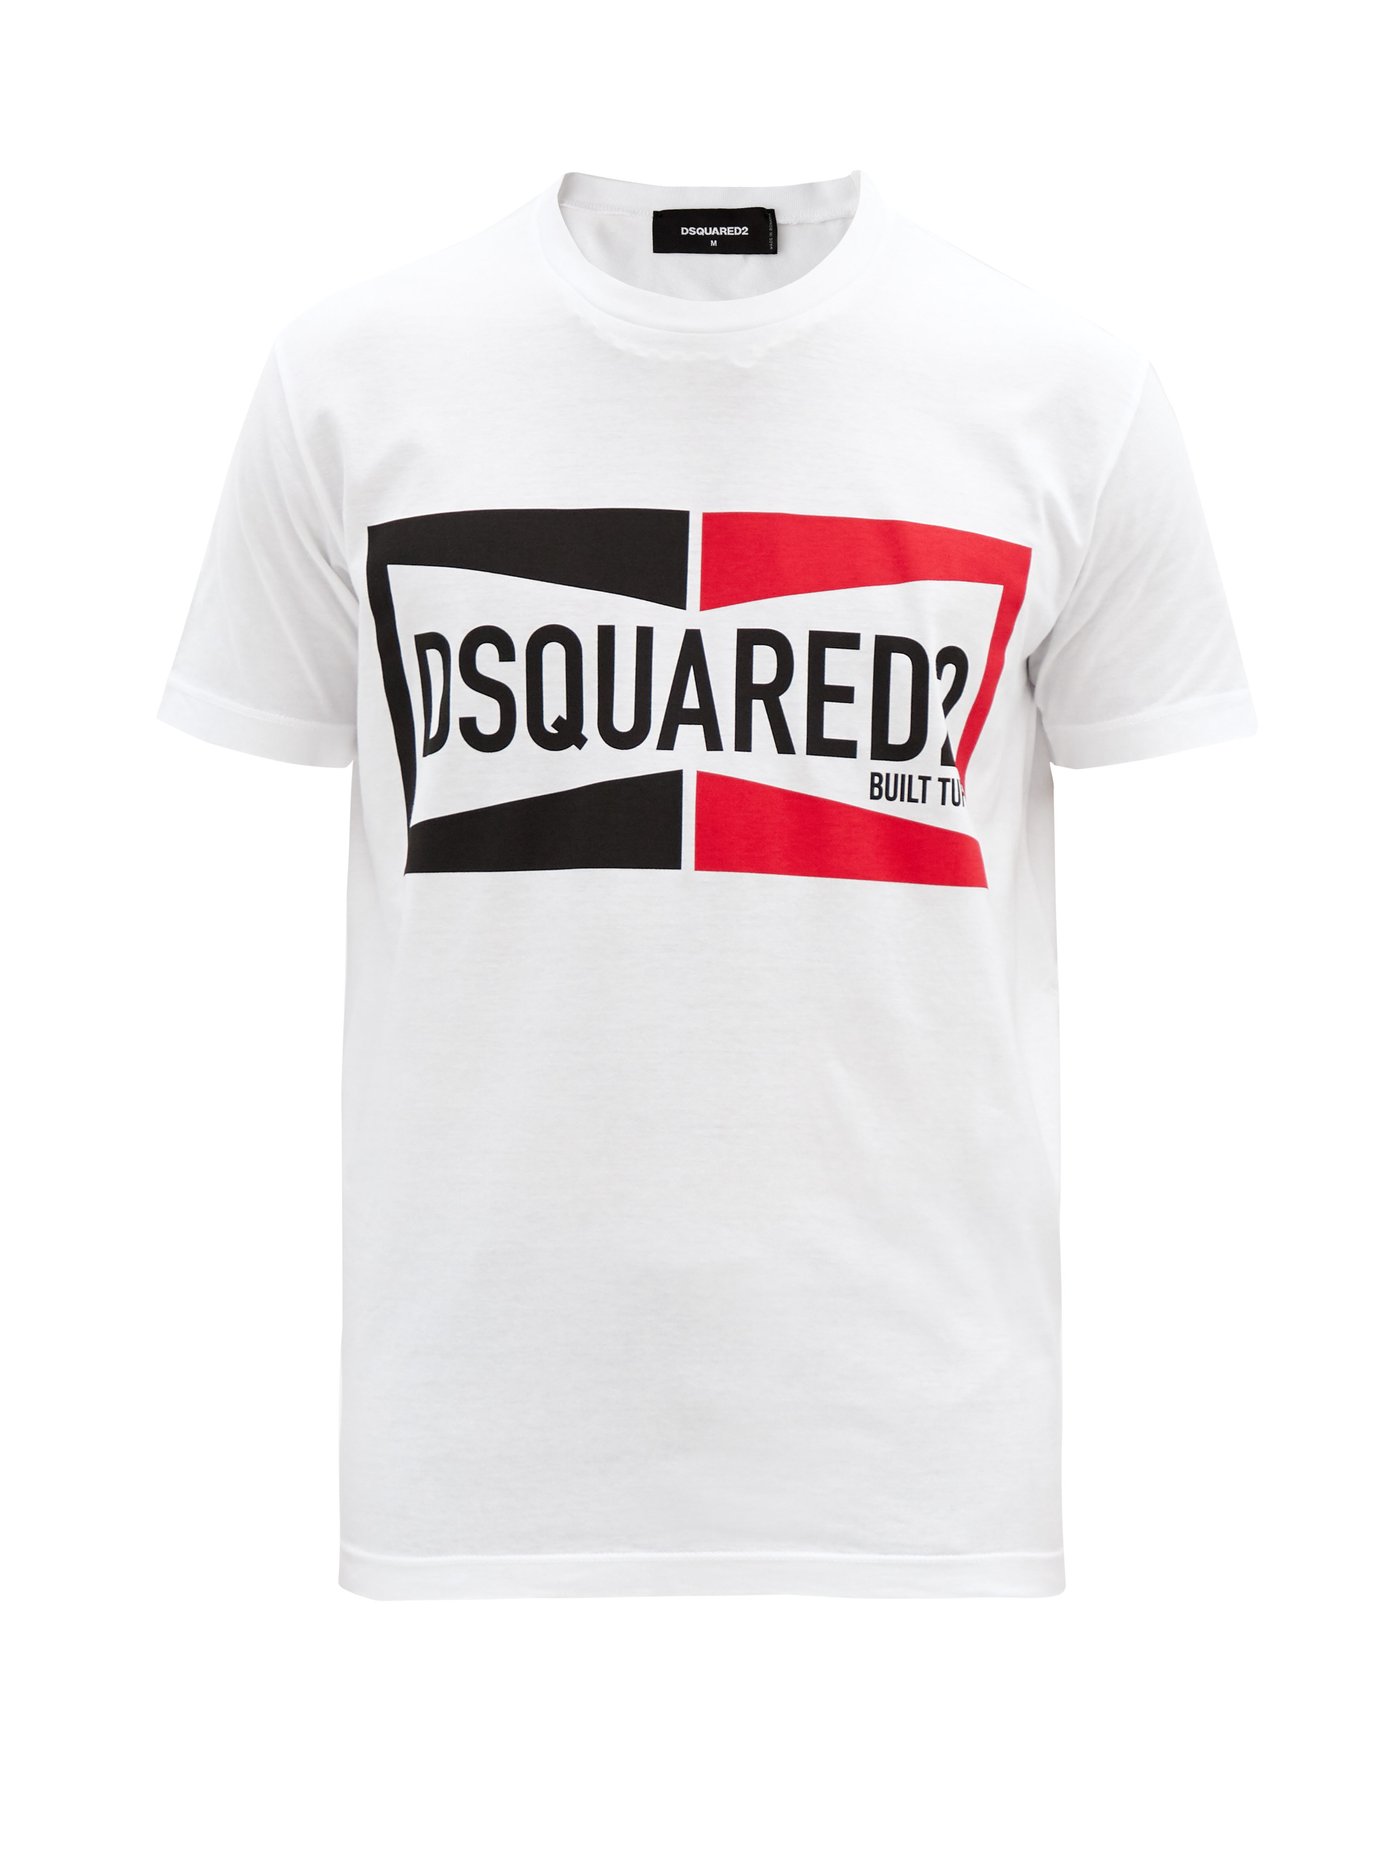 dsquared2 t shirt uk